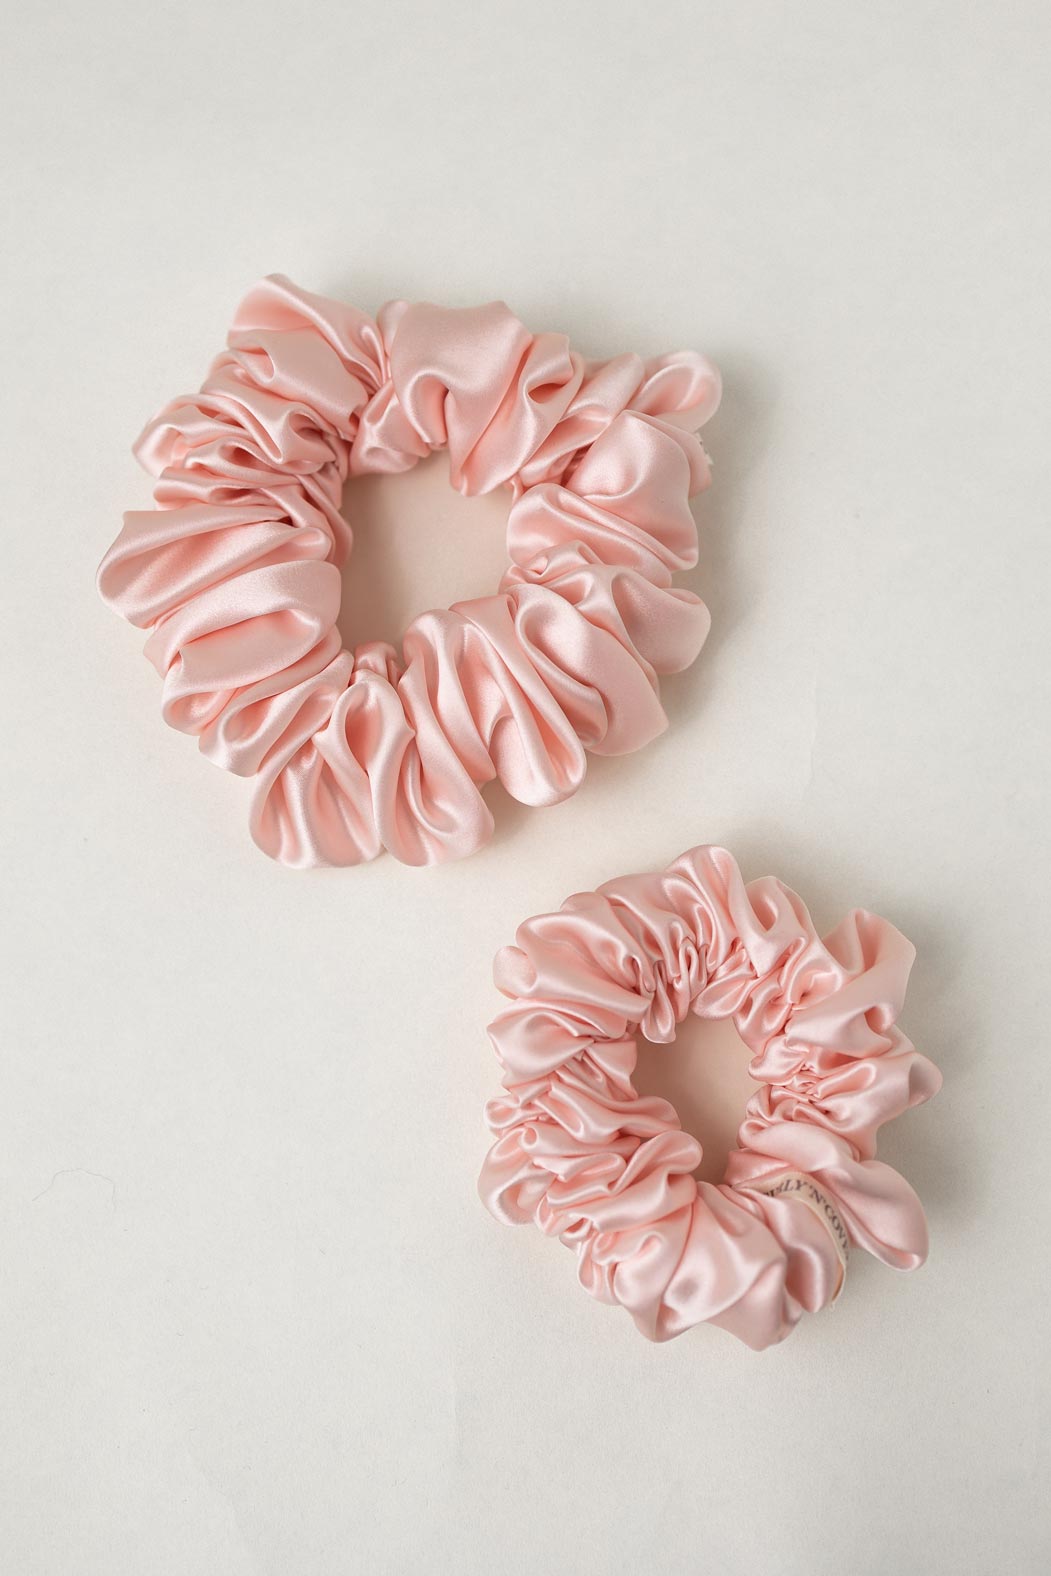 Scrunchie (Silk) – Haargummi aus reiner Seide 22 Momme Grad 6A - 100% Maulbeerseide